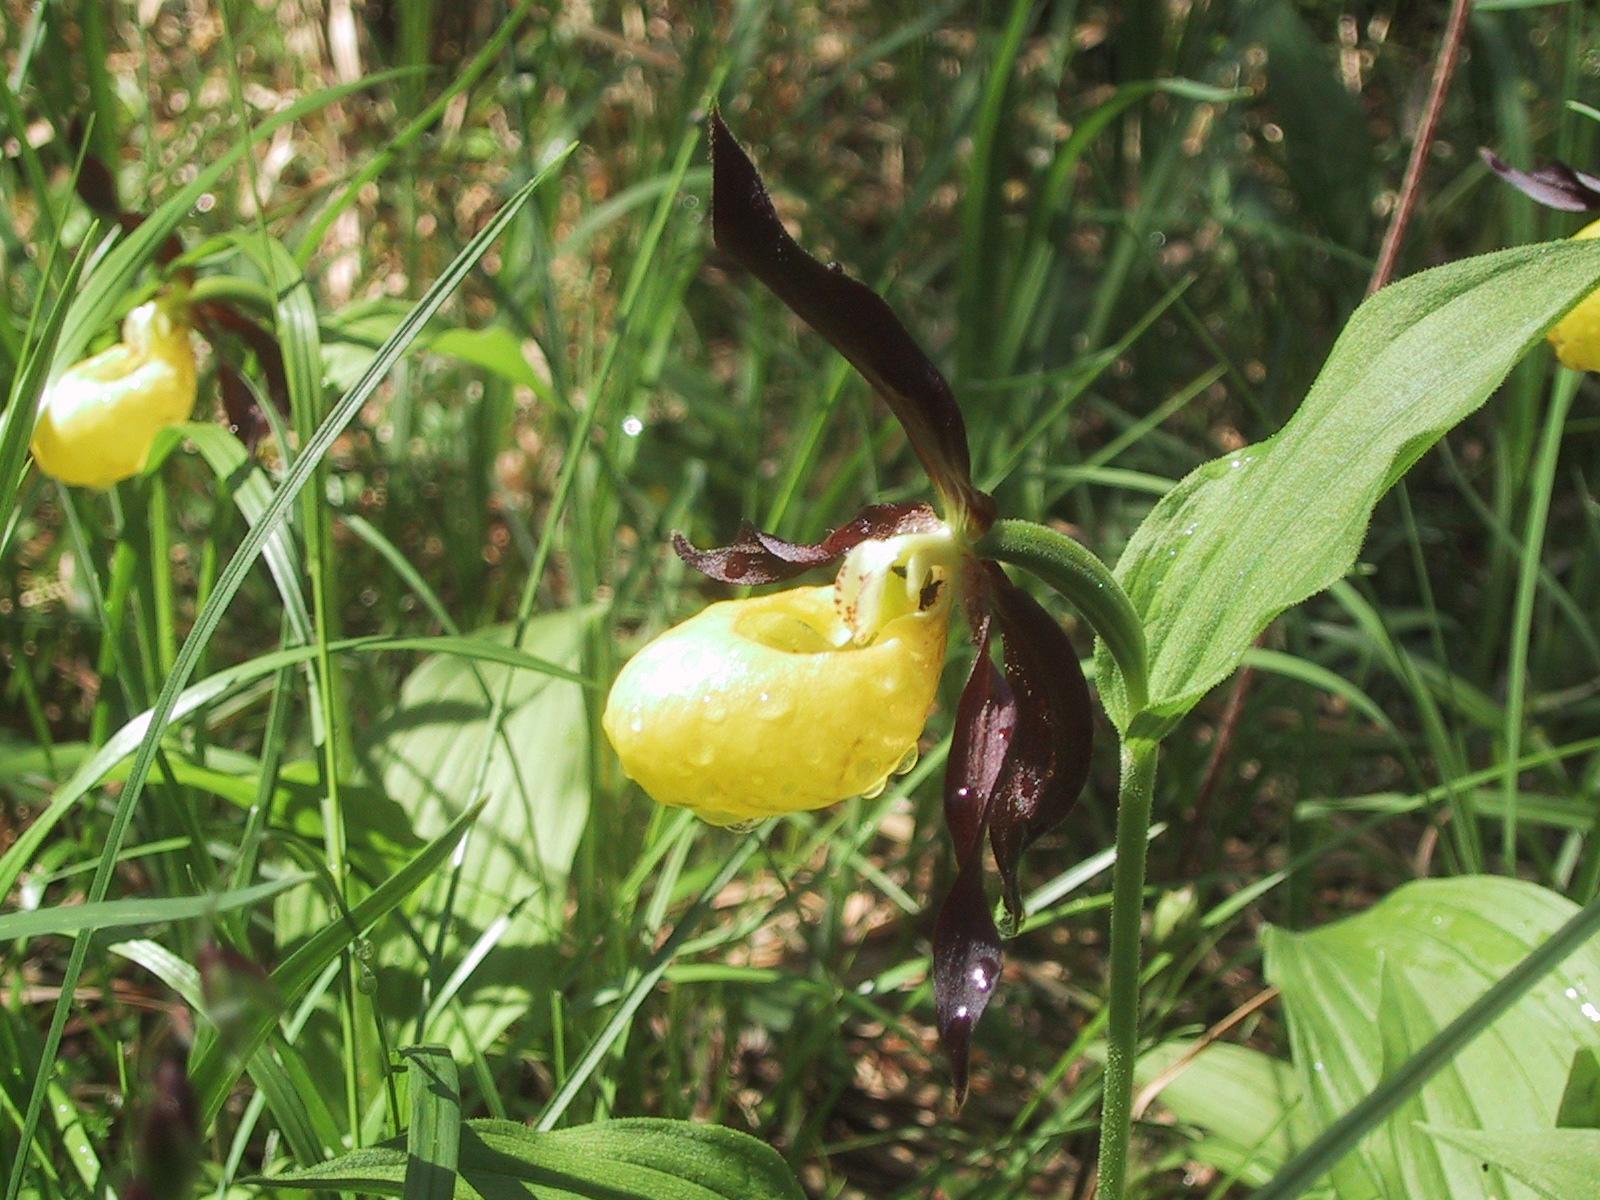 Botanik - Frauenschuh (9): Der Frauenschuh (Cypripedium calceolus) ist eine Orchideen-Art. Er blüht in der Isel/Arosa etwa im Monat Juli. Die Pflanze liebt lichte Wälder und kalkreiche Böden (deshalb das Vorkommen in der Isel). Die Entwicklung vom Samen bis zur blütentragenden Pflanze dauert 12 bis 15 Jahre.